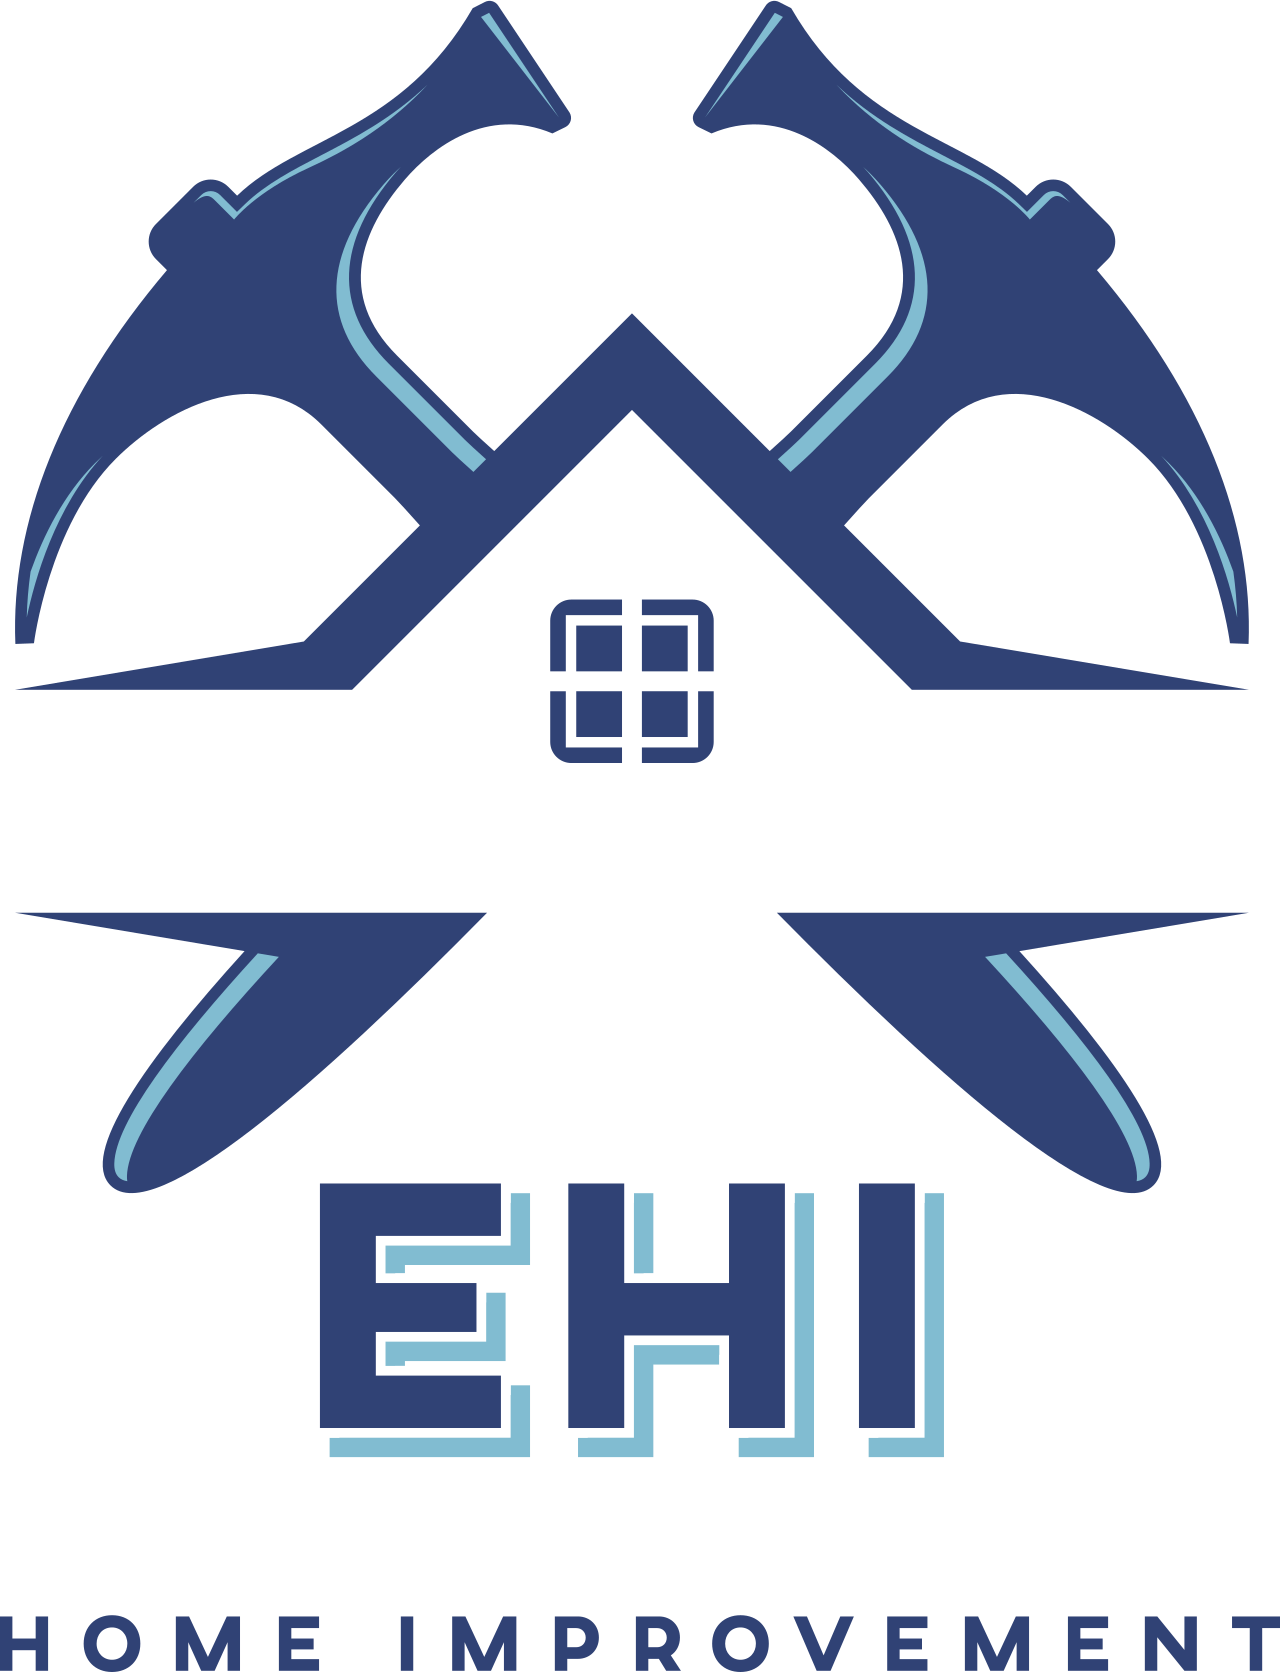 EHI's logo